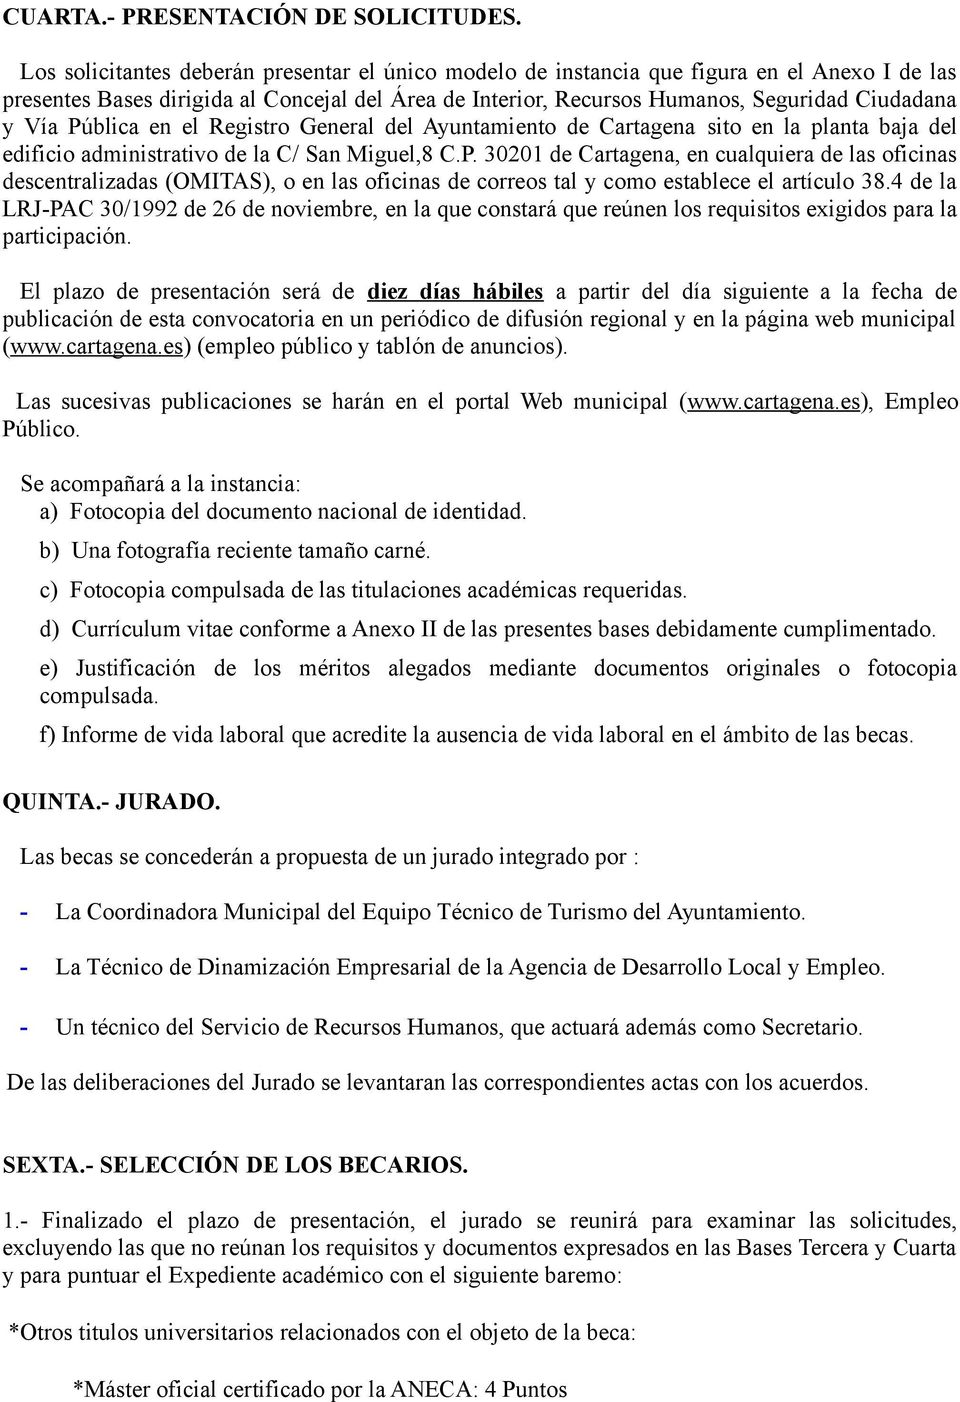 Pública en el Registro General del Ayuntamiento de Cartagena sito en la planta baja del edificio administrativo de la C/ San Miguel,8 C.P. 30201 de Cartagena, en cualquiera de las oficinas descentralizadas (OMITAS), o en las oficinas de correos tal y como establece el artículo 38.